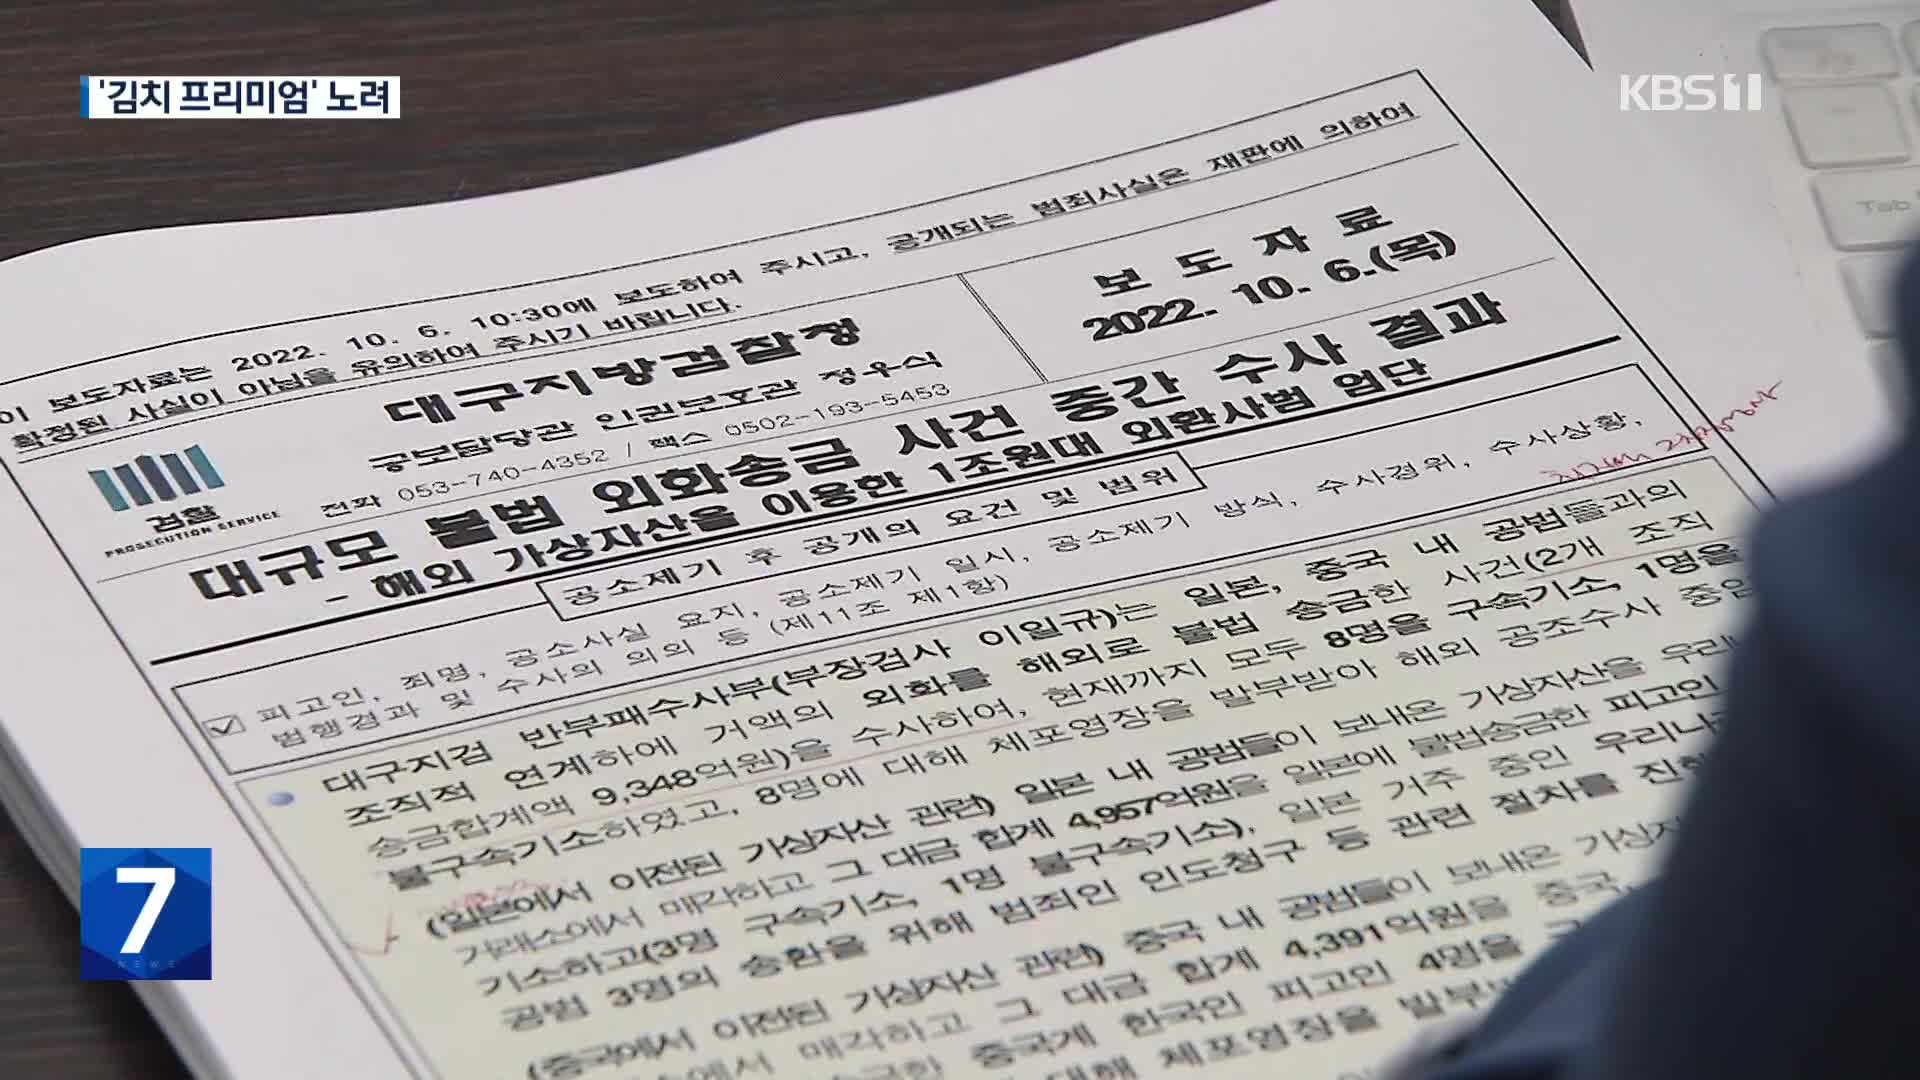 ‘김치 프리미엄’ 노려 9천3백억 원대 불법 외환거래 일당 기소